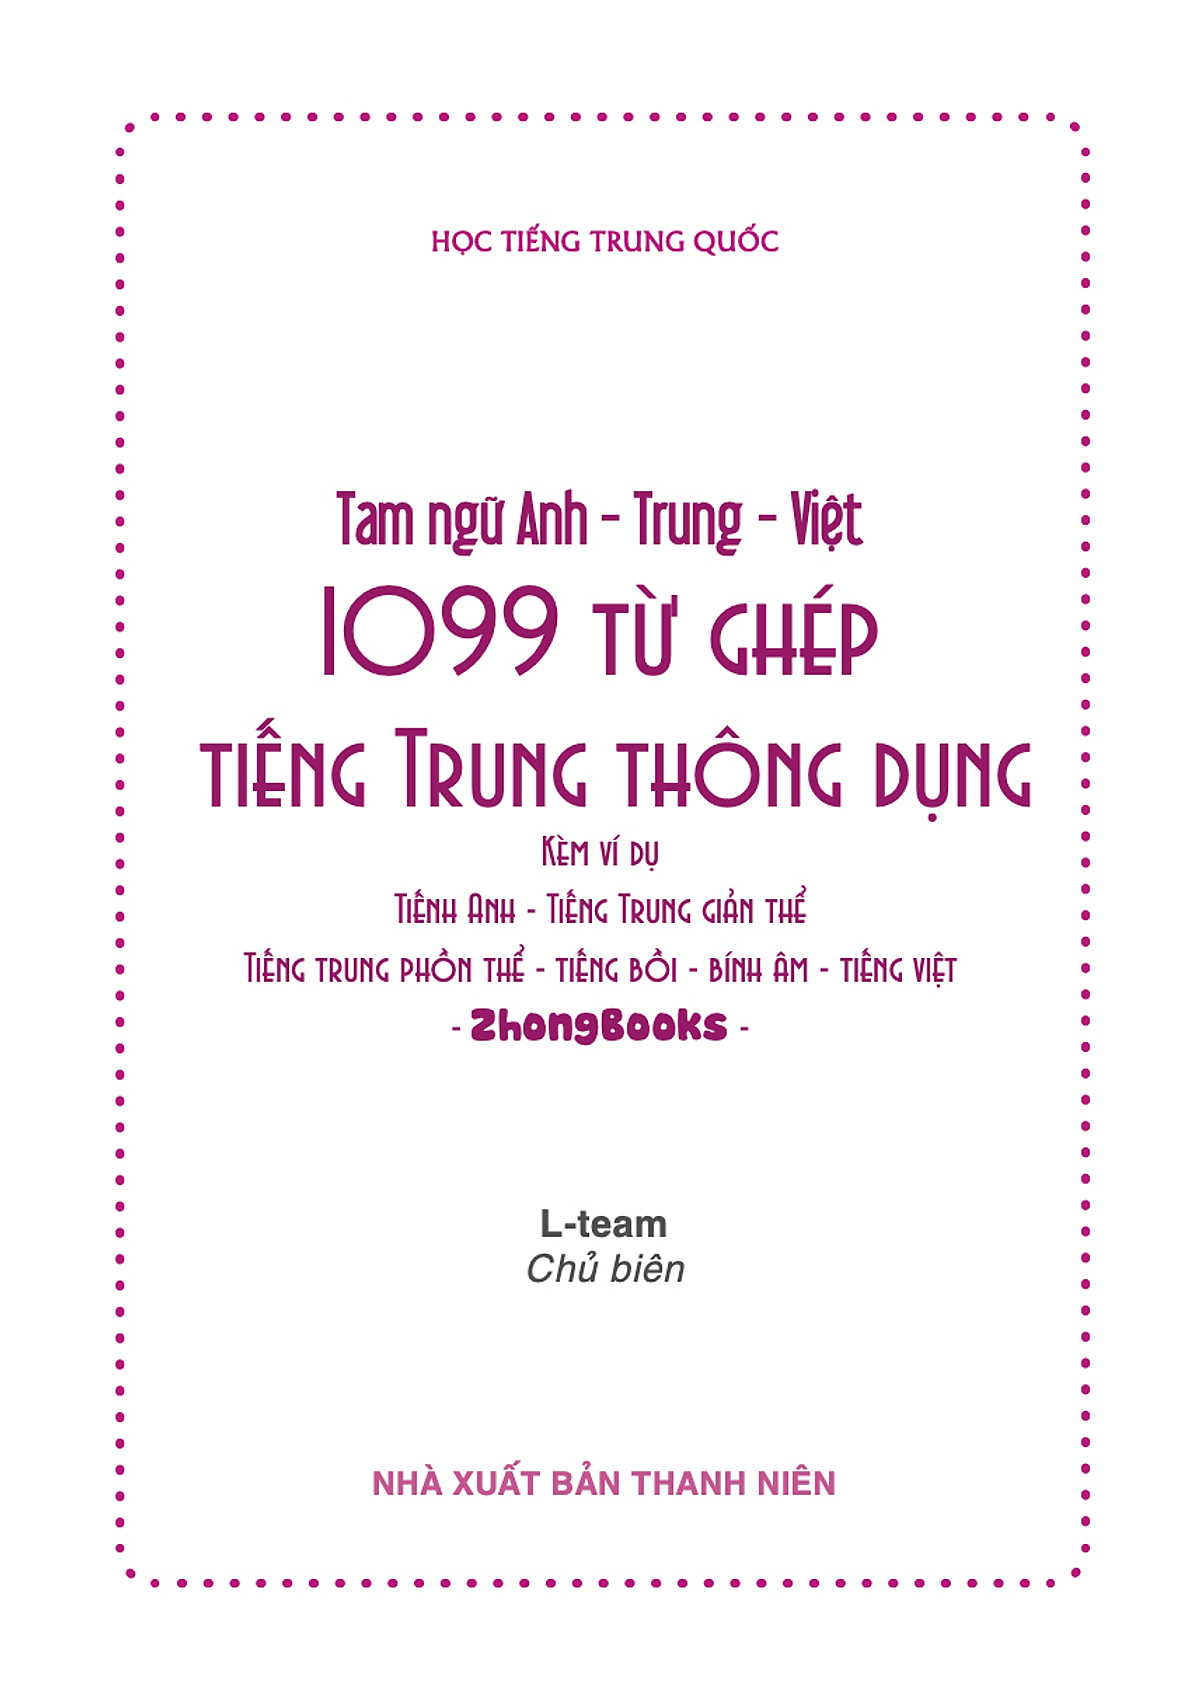 Combo 2 sách: 5099 Từ Vựng HSK1 – HSK6 Từ Điển Tam Ngữ Anh – Trung – Việt + 1099 Từ Ghép Tiếng Trung Thông Dụng (Kèm ví dụ, tiếng Anh, tiếng Trung giản thể, tiếng Trung phồn thể, bính âm, tiếng Việt, tiếng Trung bồi) + DVD Audio tài liệu